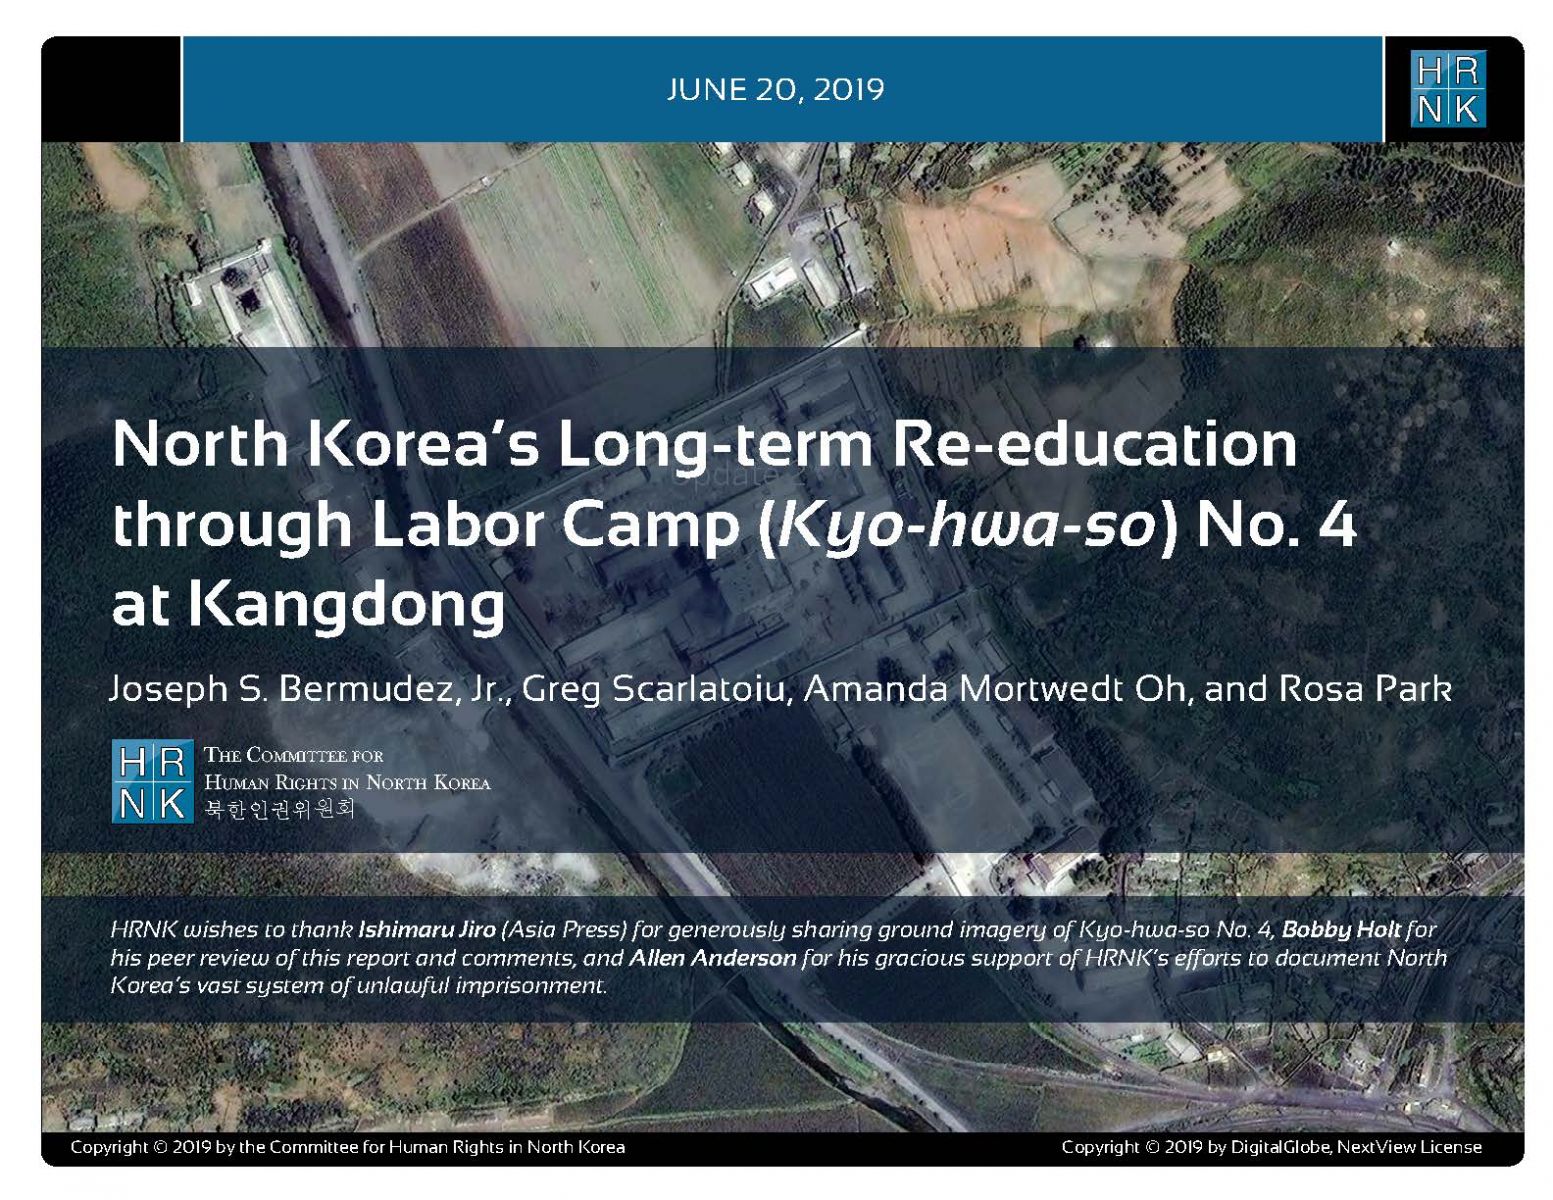 North Korea’s Long-term Re-education through Labor Camp (Kyo-hwa-so) No. 4 at Kangdong